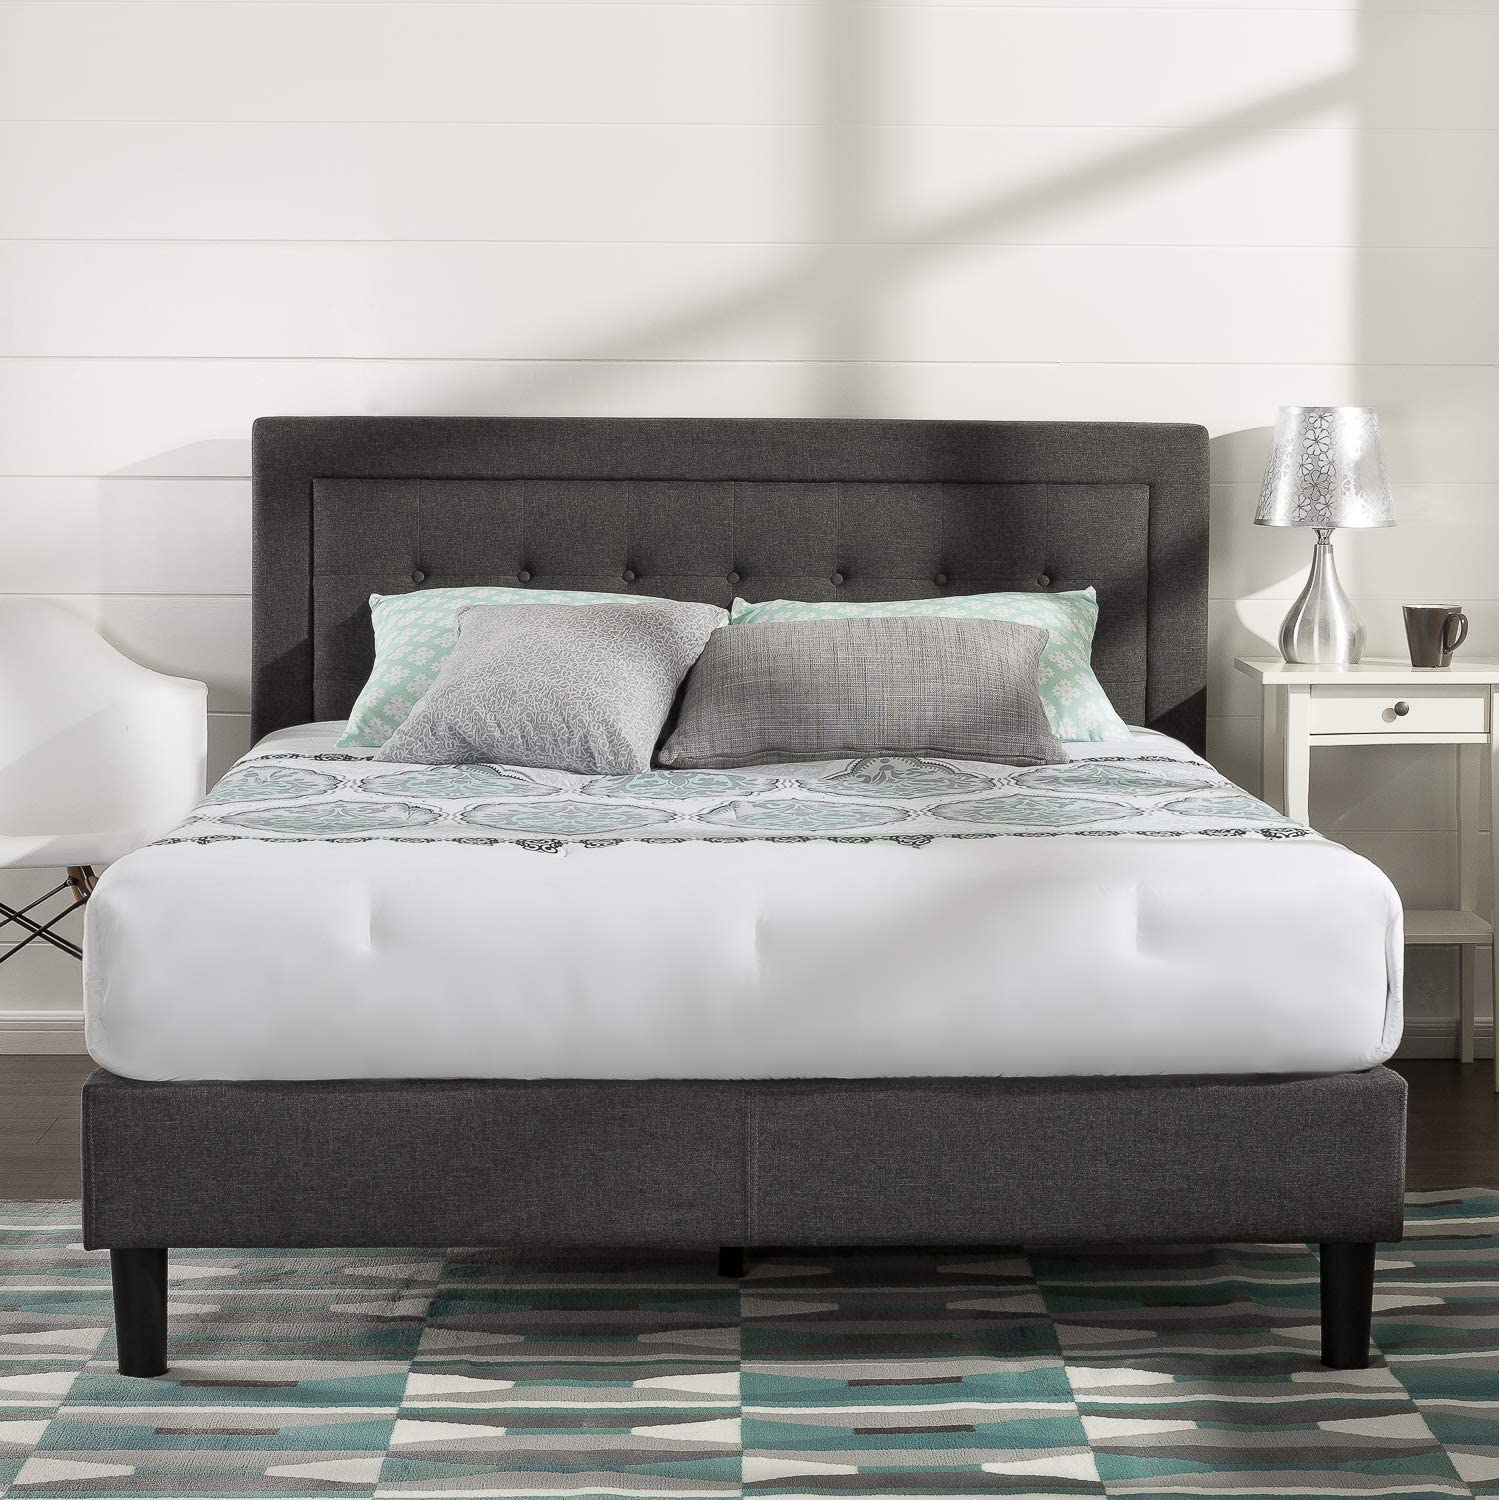 6 Best Bed Frames For Sleep Number, Adjustable Bed Frame For Sleep Number Bed